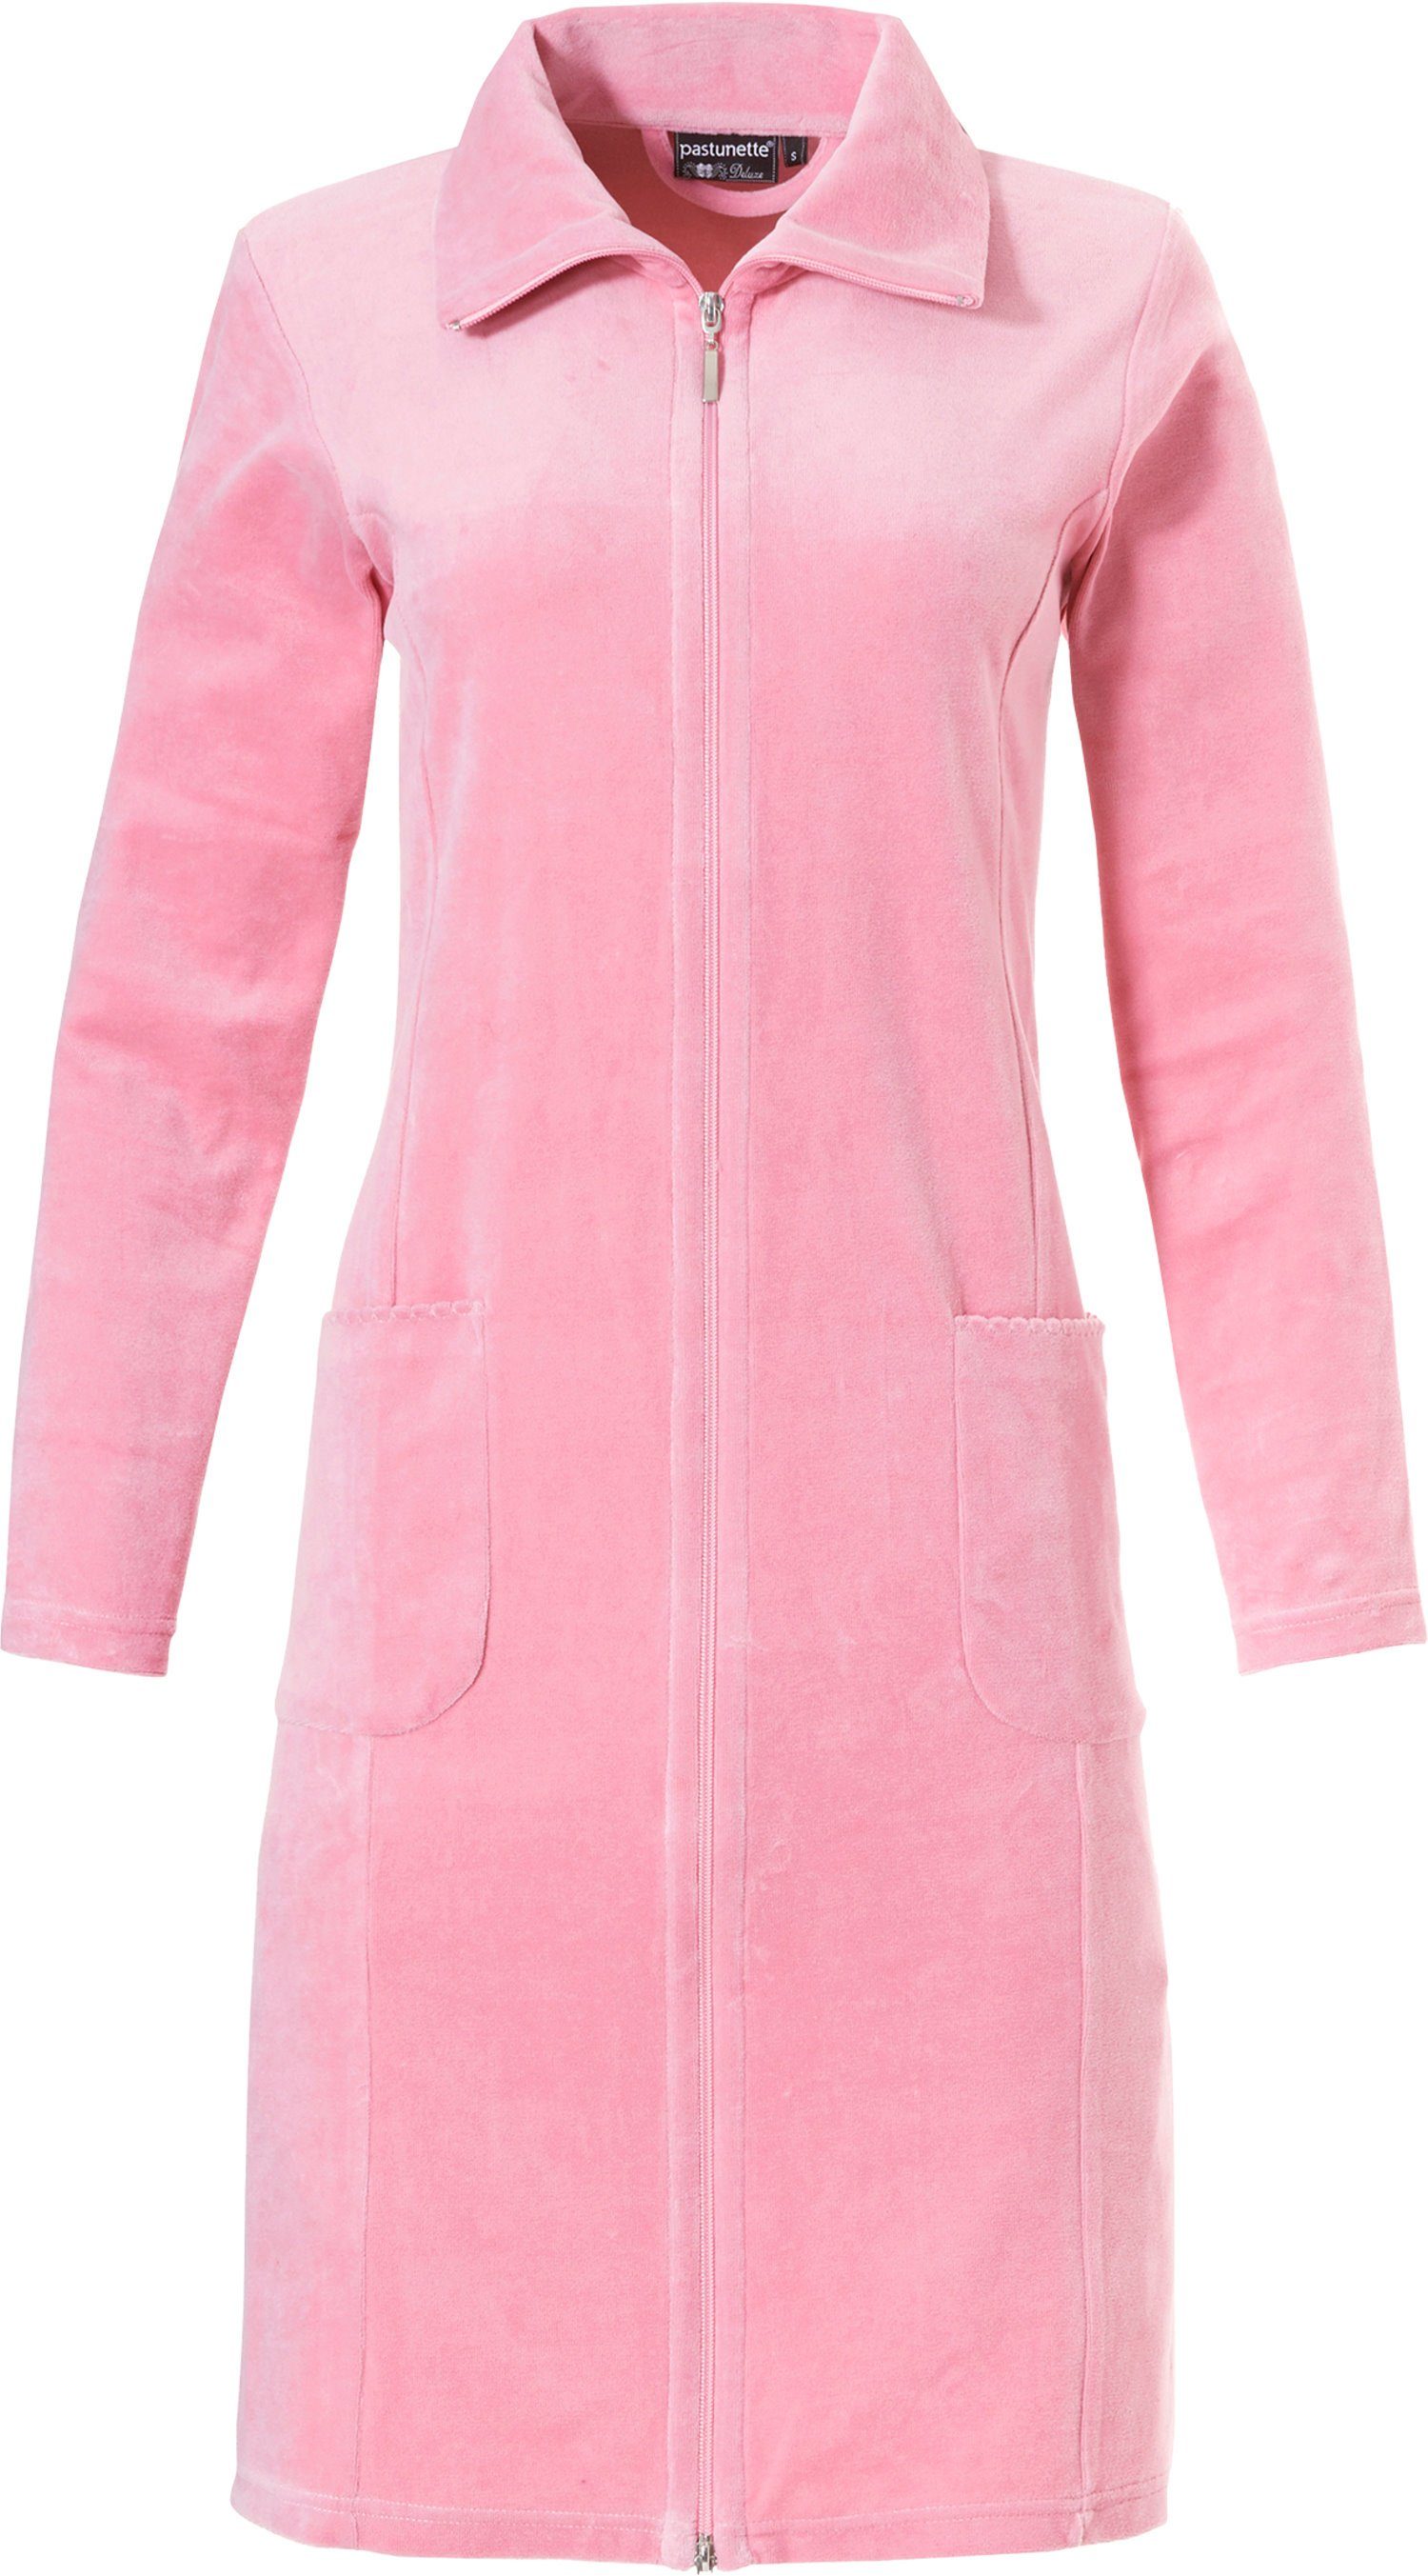 Damen Baumwollmischung, Reißverschluss, klassisch Reißverschluss, Stehkragen, Damenbademantel Bademantel Pastunette Nikki pink mit